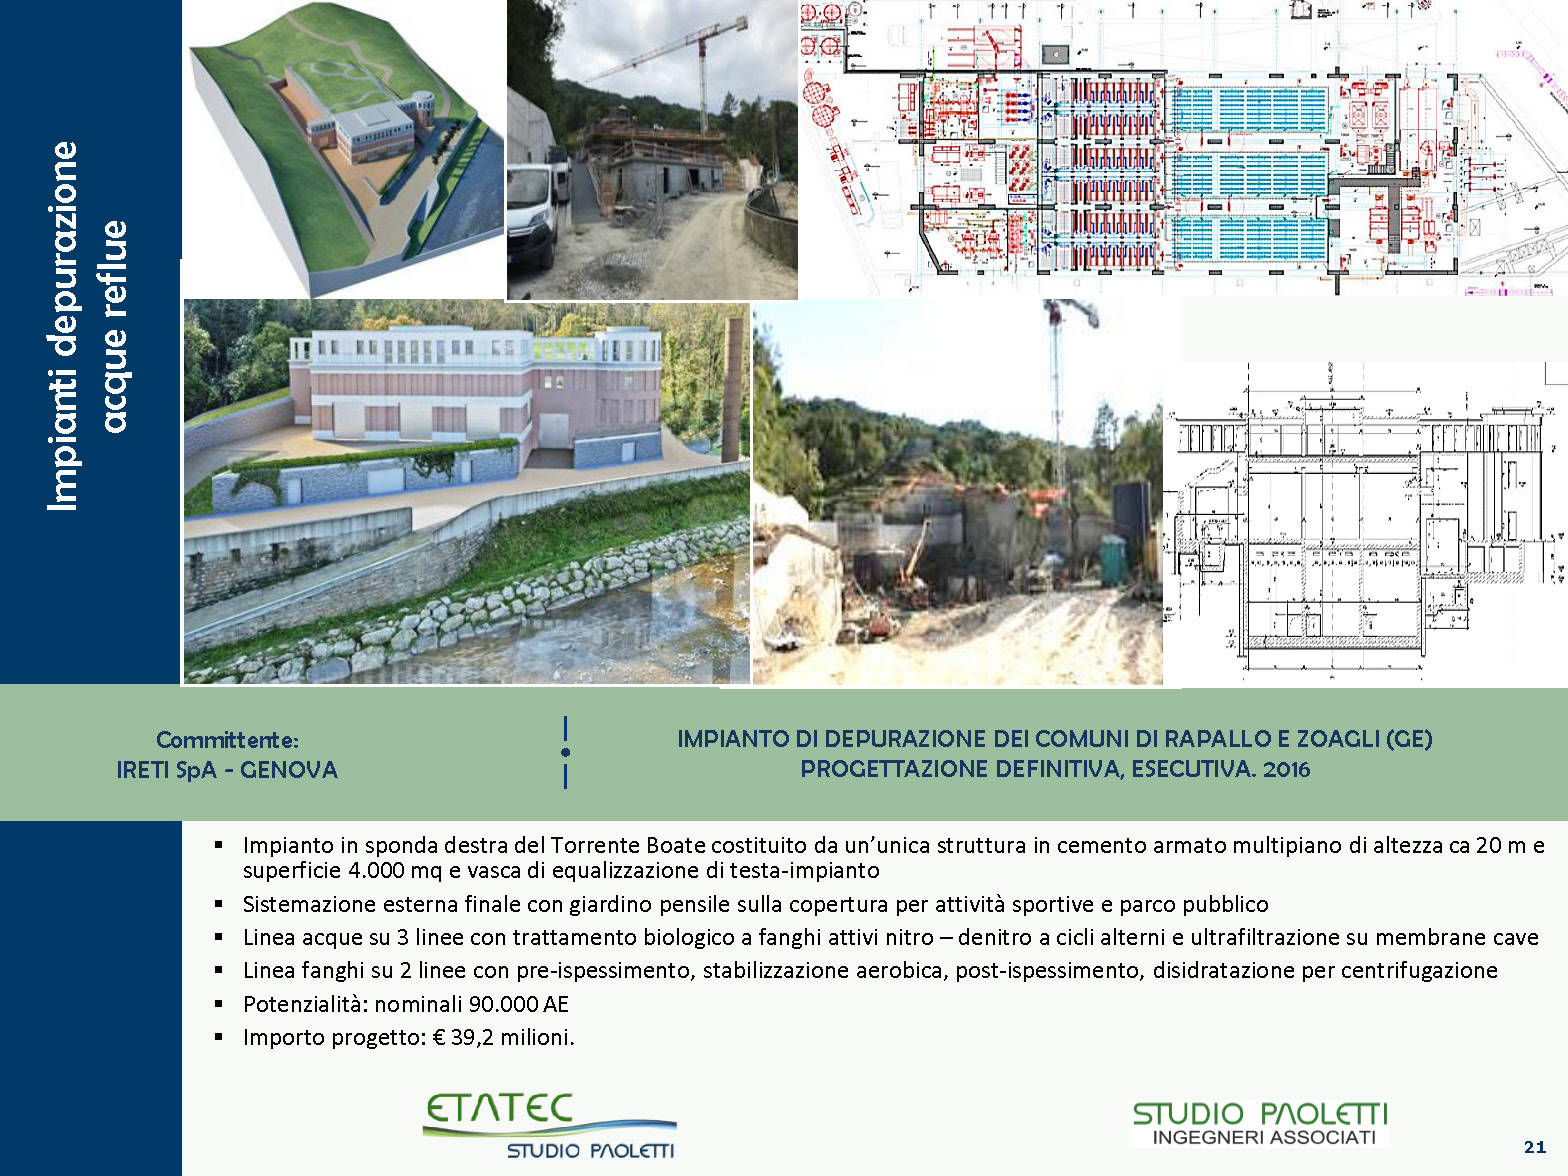 Etatec - Fognature, Drenaggio Urbano e Impianti di Depurazione